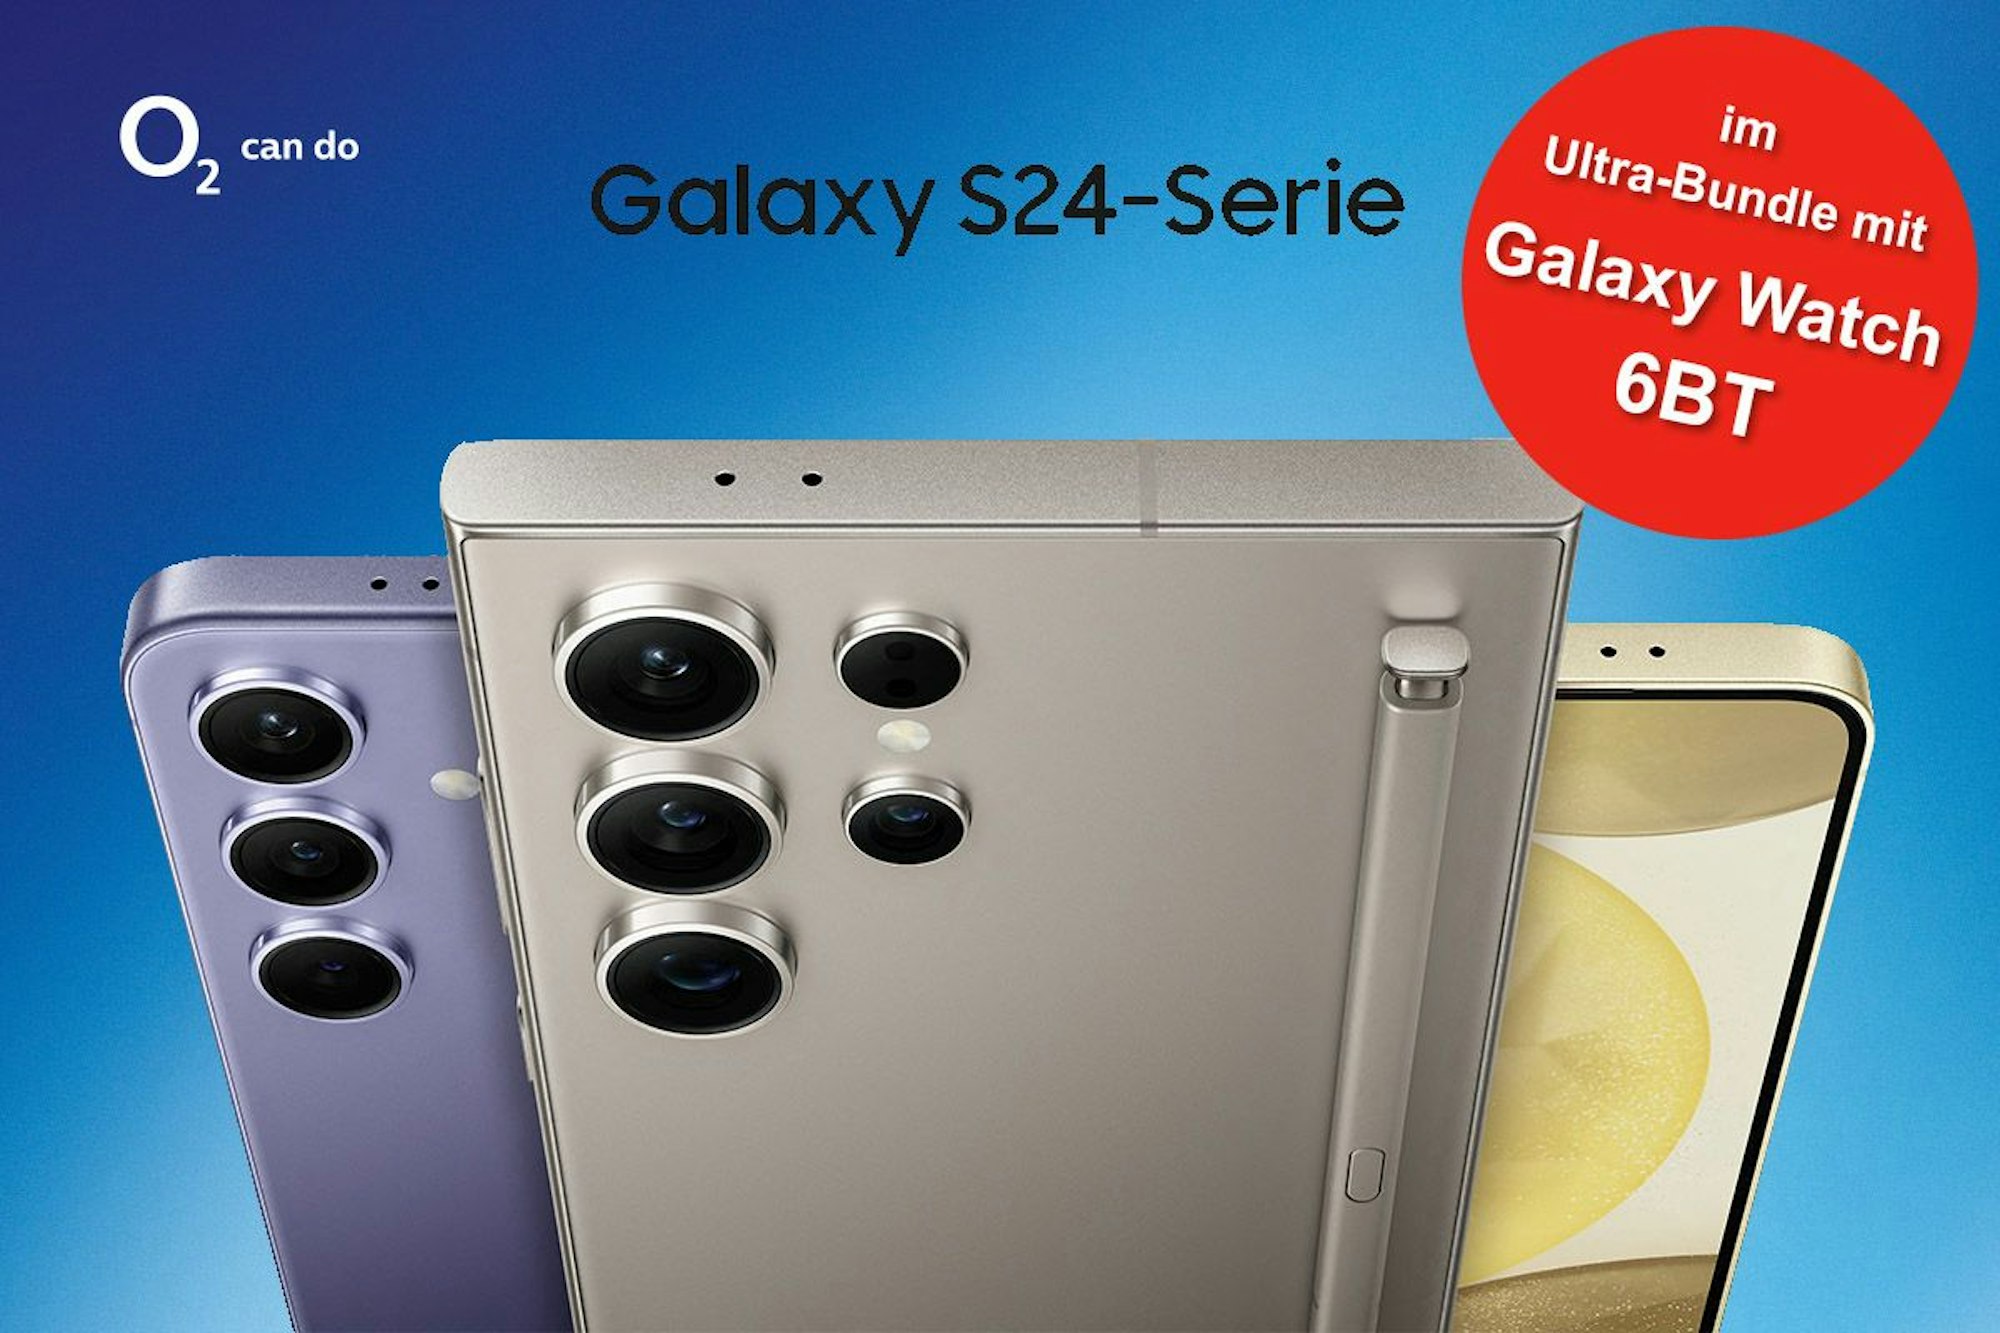 Abbildung der Samsung Galaxy S24 Smartphones in verschiedenen Farben.